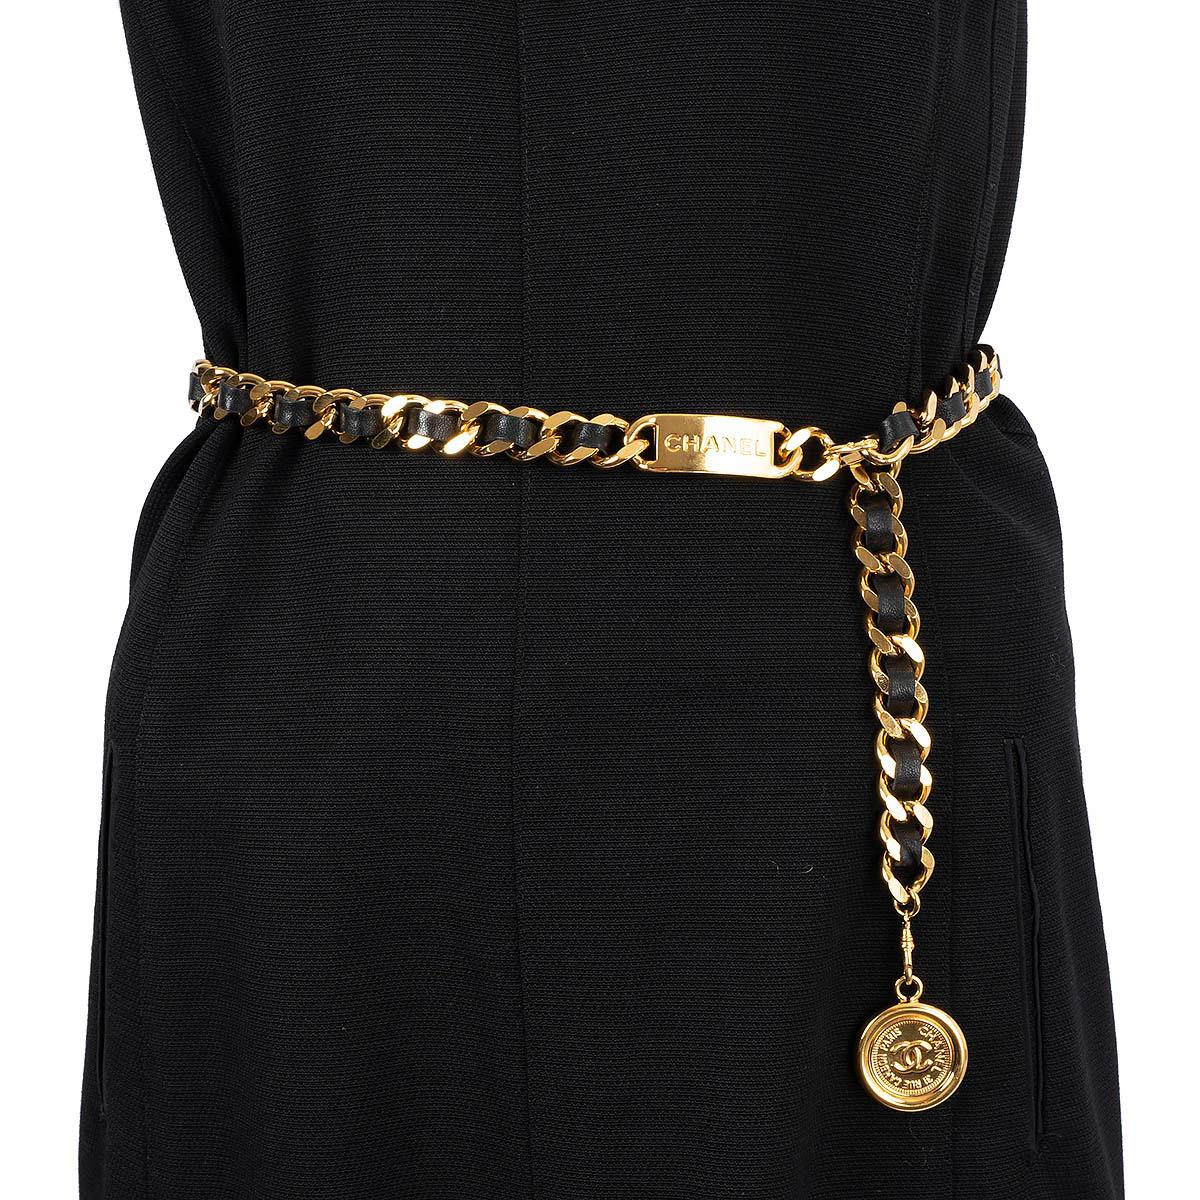 100% authentique Chanel 1995 chaîne dorée et ceinture en cuir noir avec médaillon CC. Il a été porté une ou deux fois et est dans un état pratiquement neuf. Livré avec boîte. 

Mesures
Modèle	Chanel95P
Taille de l'étiquette	OS
Largeur	1,8cm